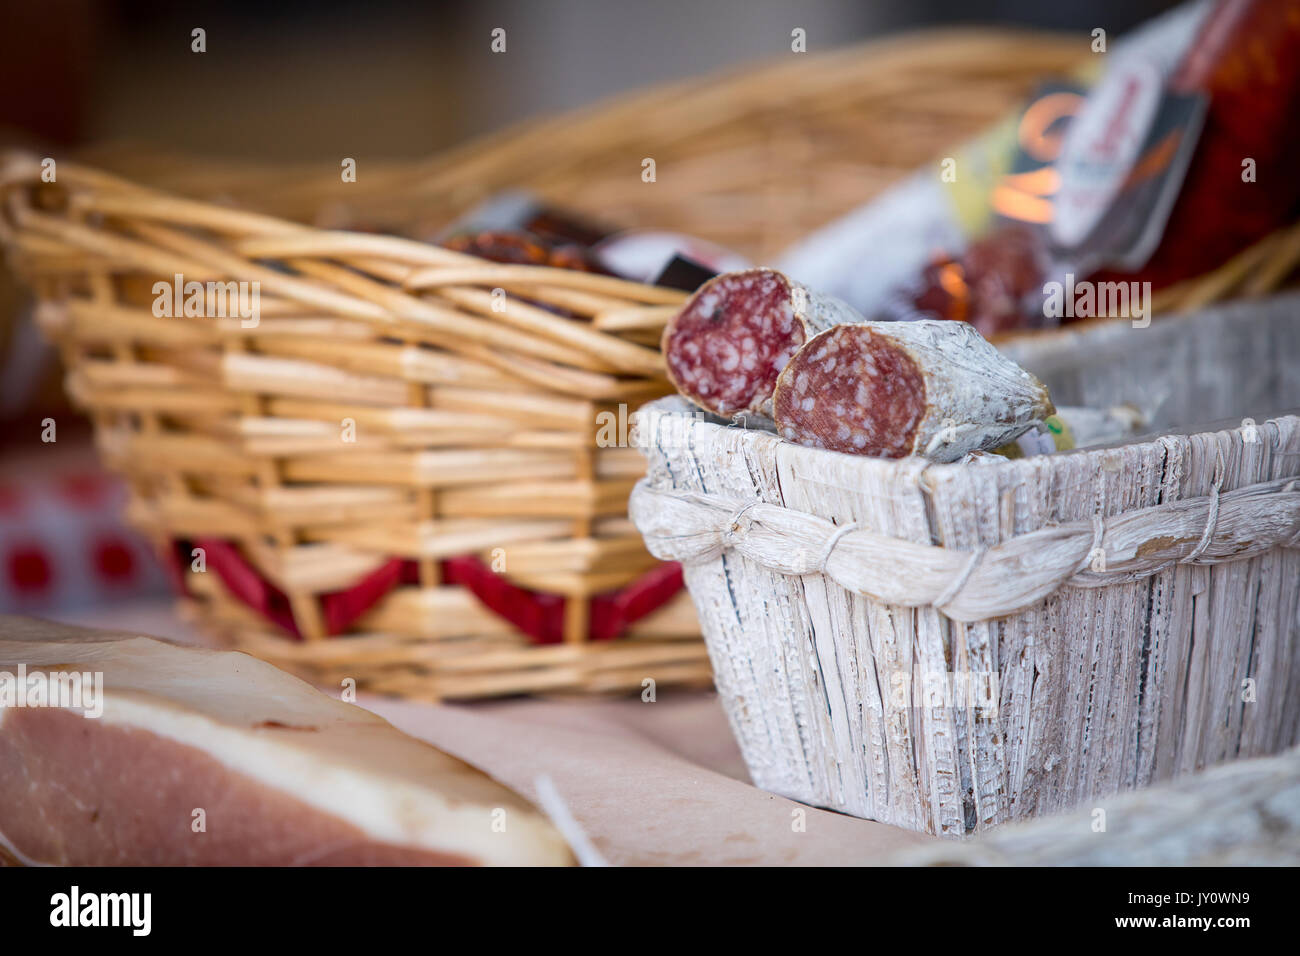 Traditionelle Salami im Korb auf dem Markt zu verkaufen Stockfotografie -  Alamy